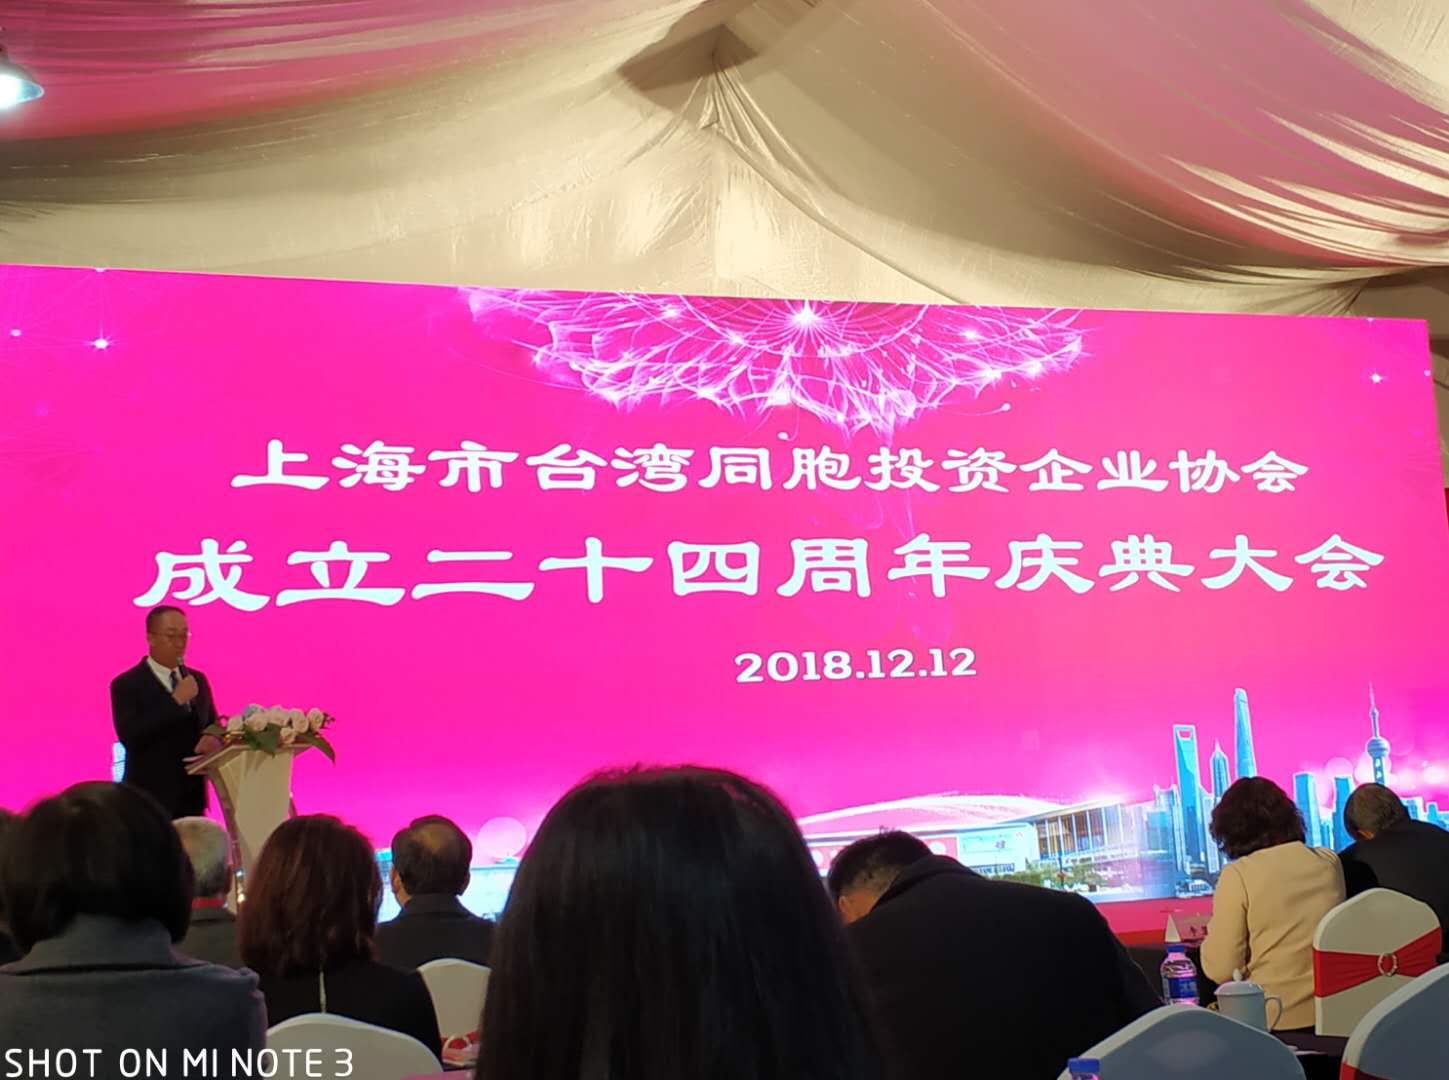 12月12日会长出席上海台协庆典 背景1 沈阳台商投资企业协会